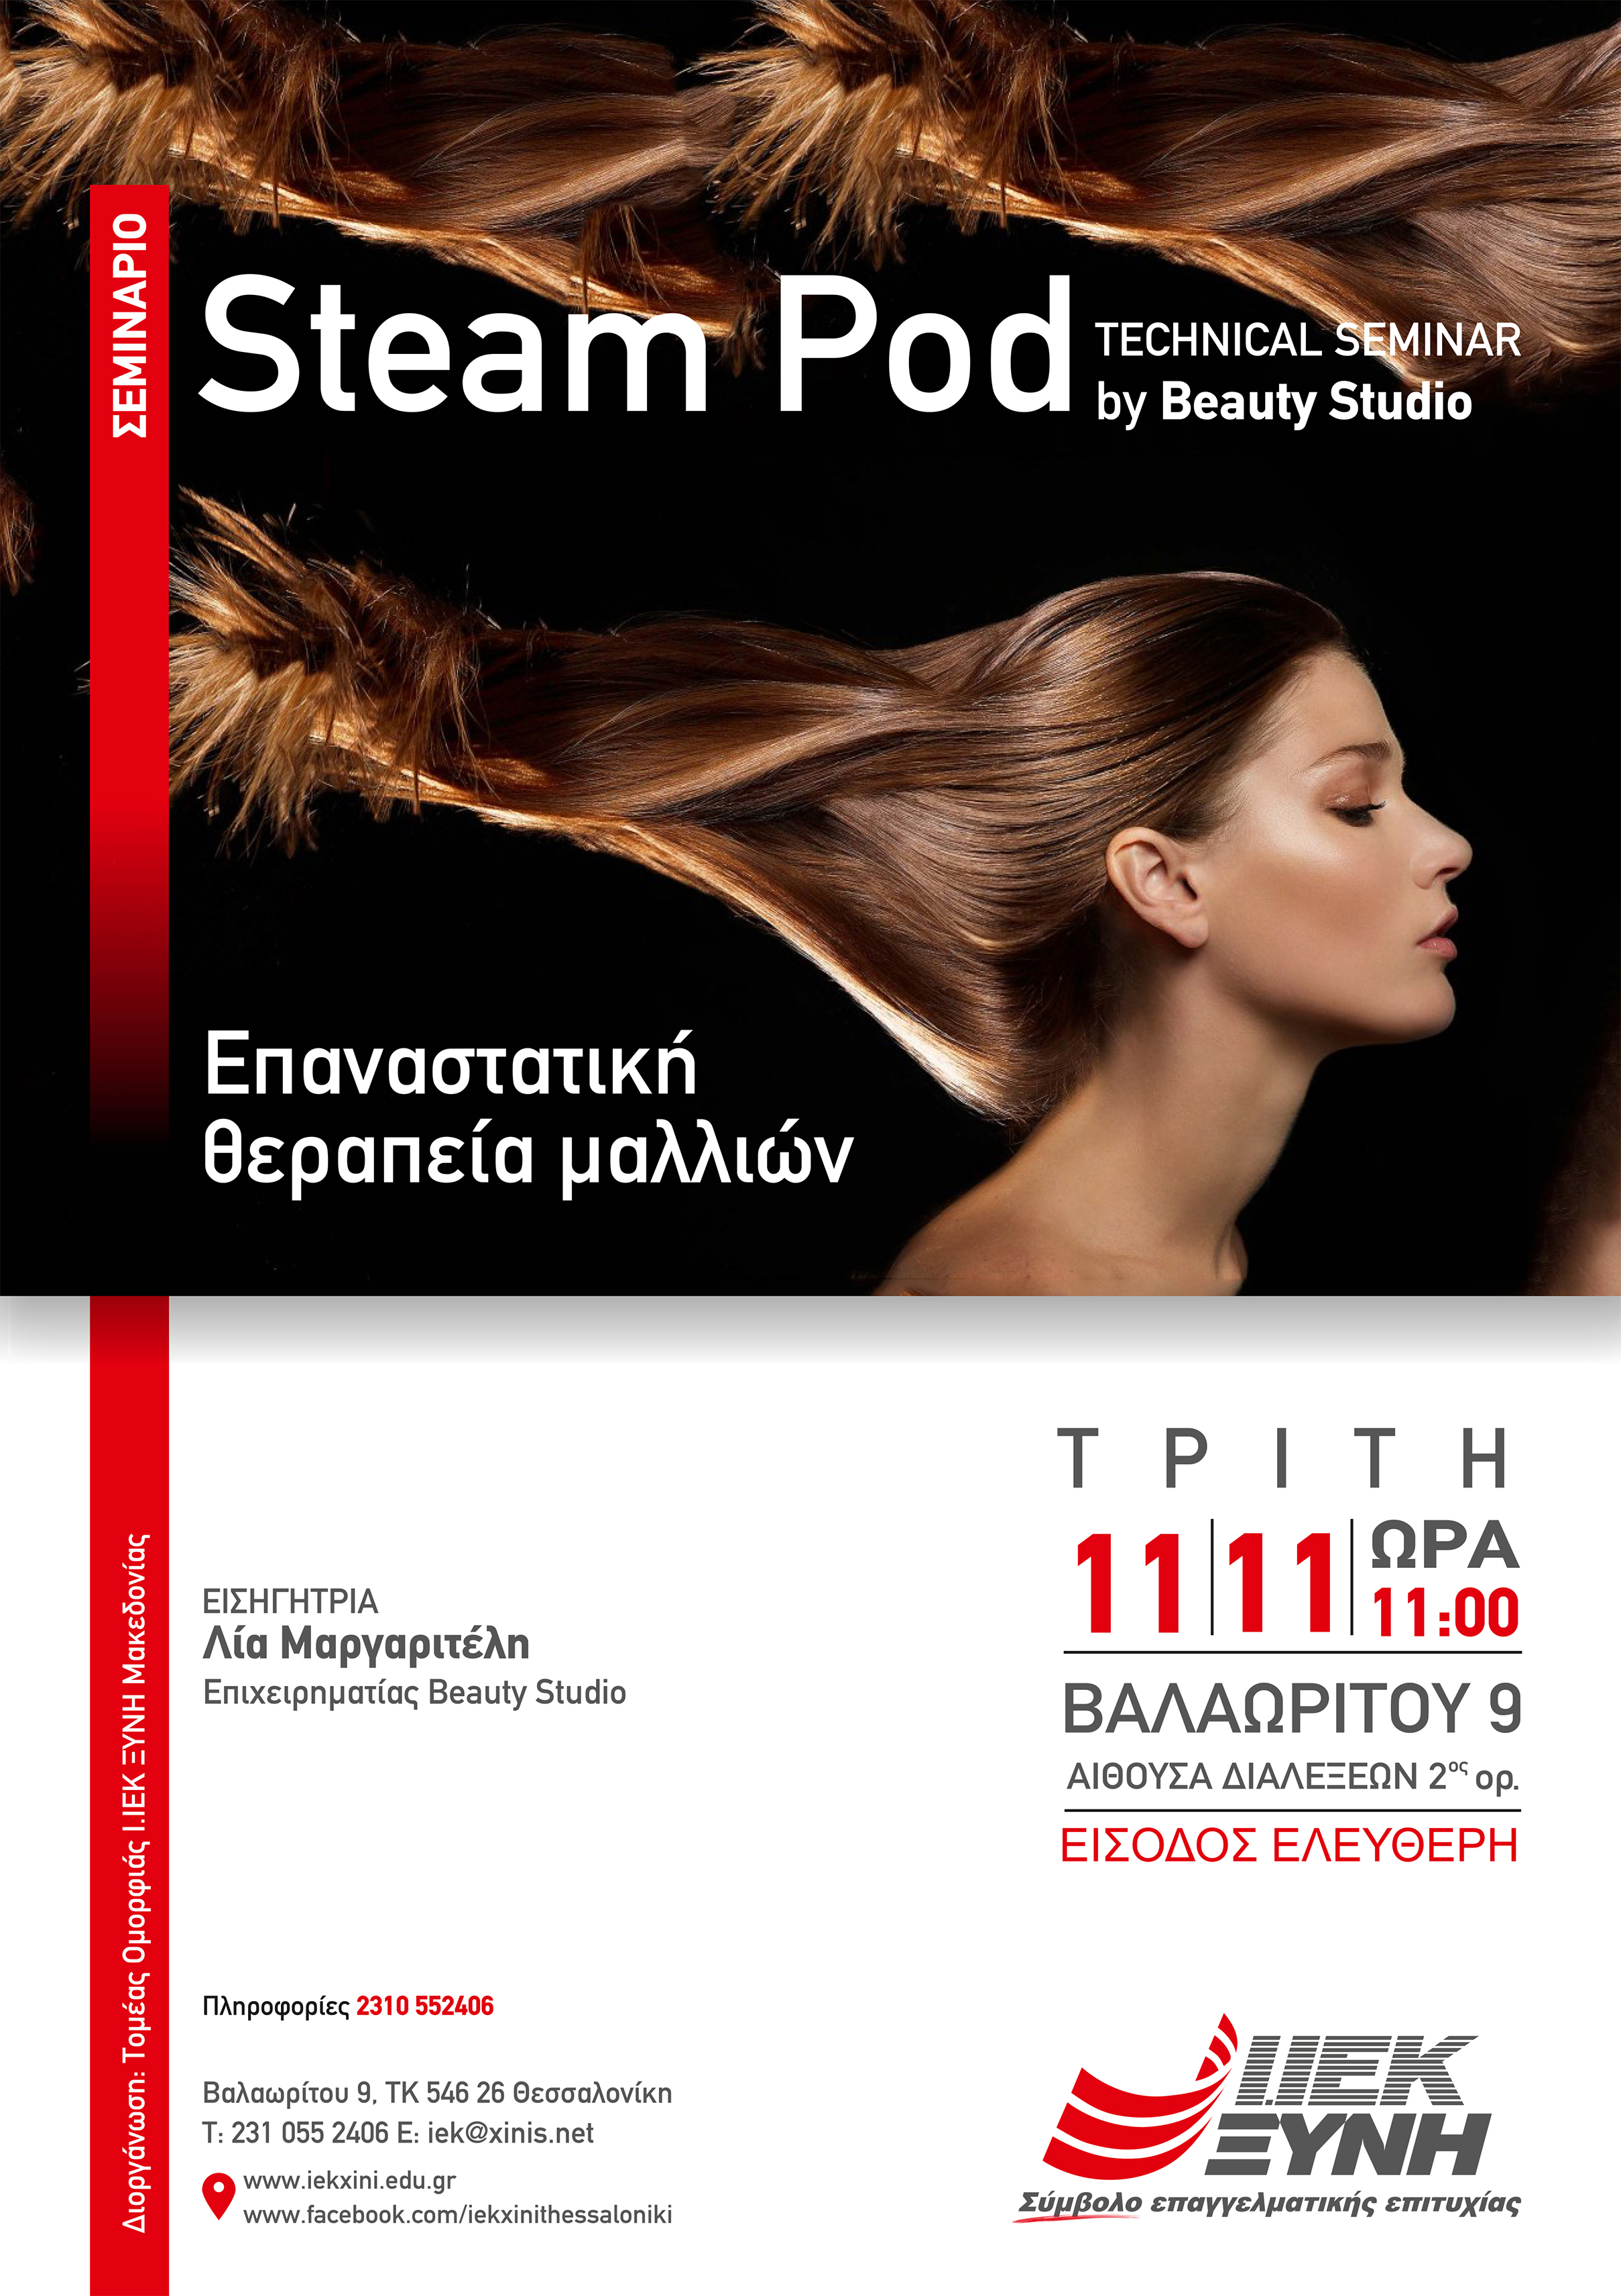 "Steam pod by Beauty Studio" – Eπαναστατική θεραπεία μαλλιών